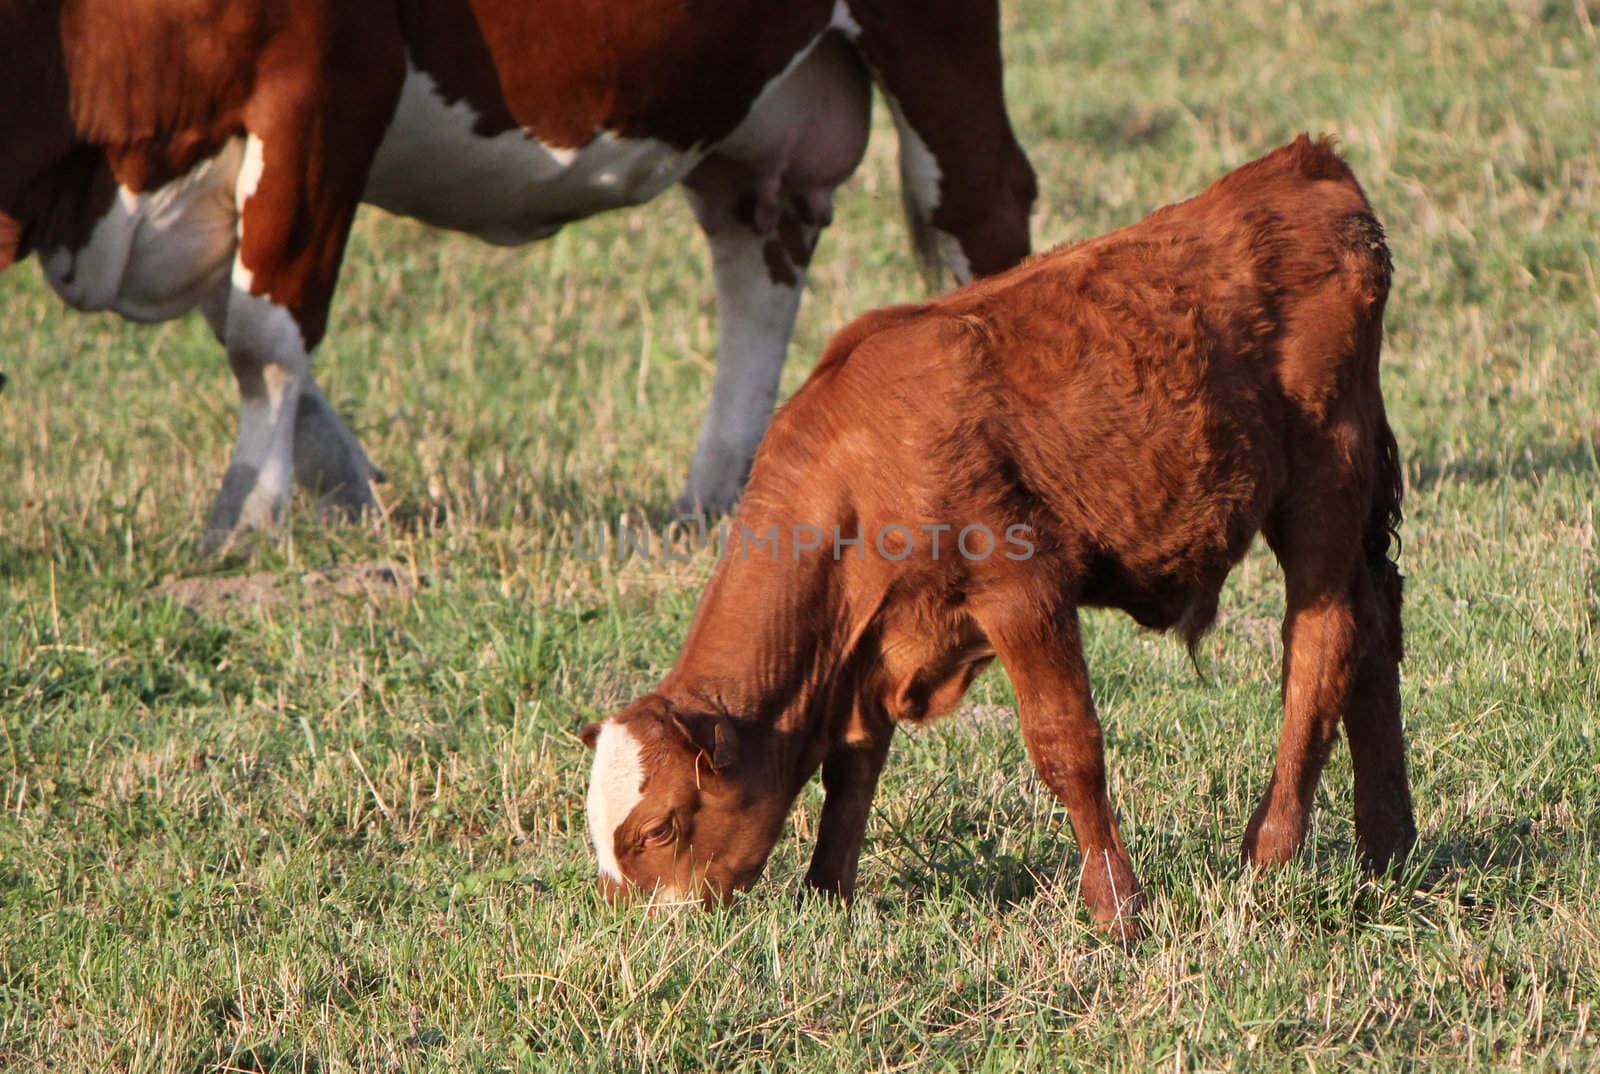 Young calf eating by Elenaphotos21